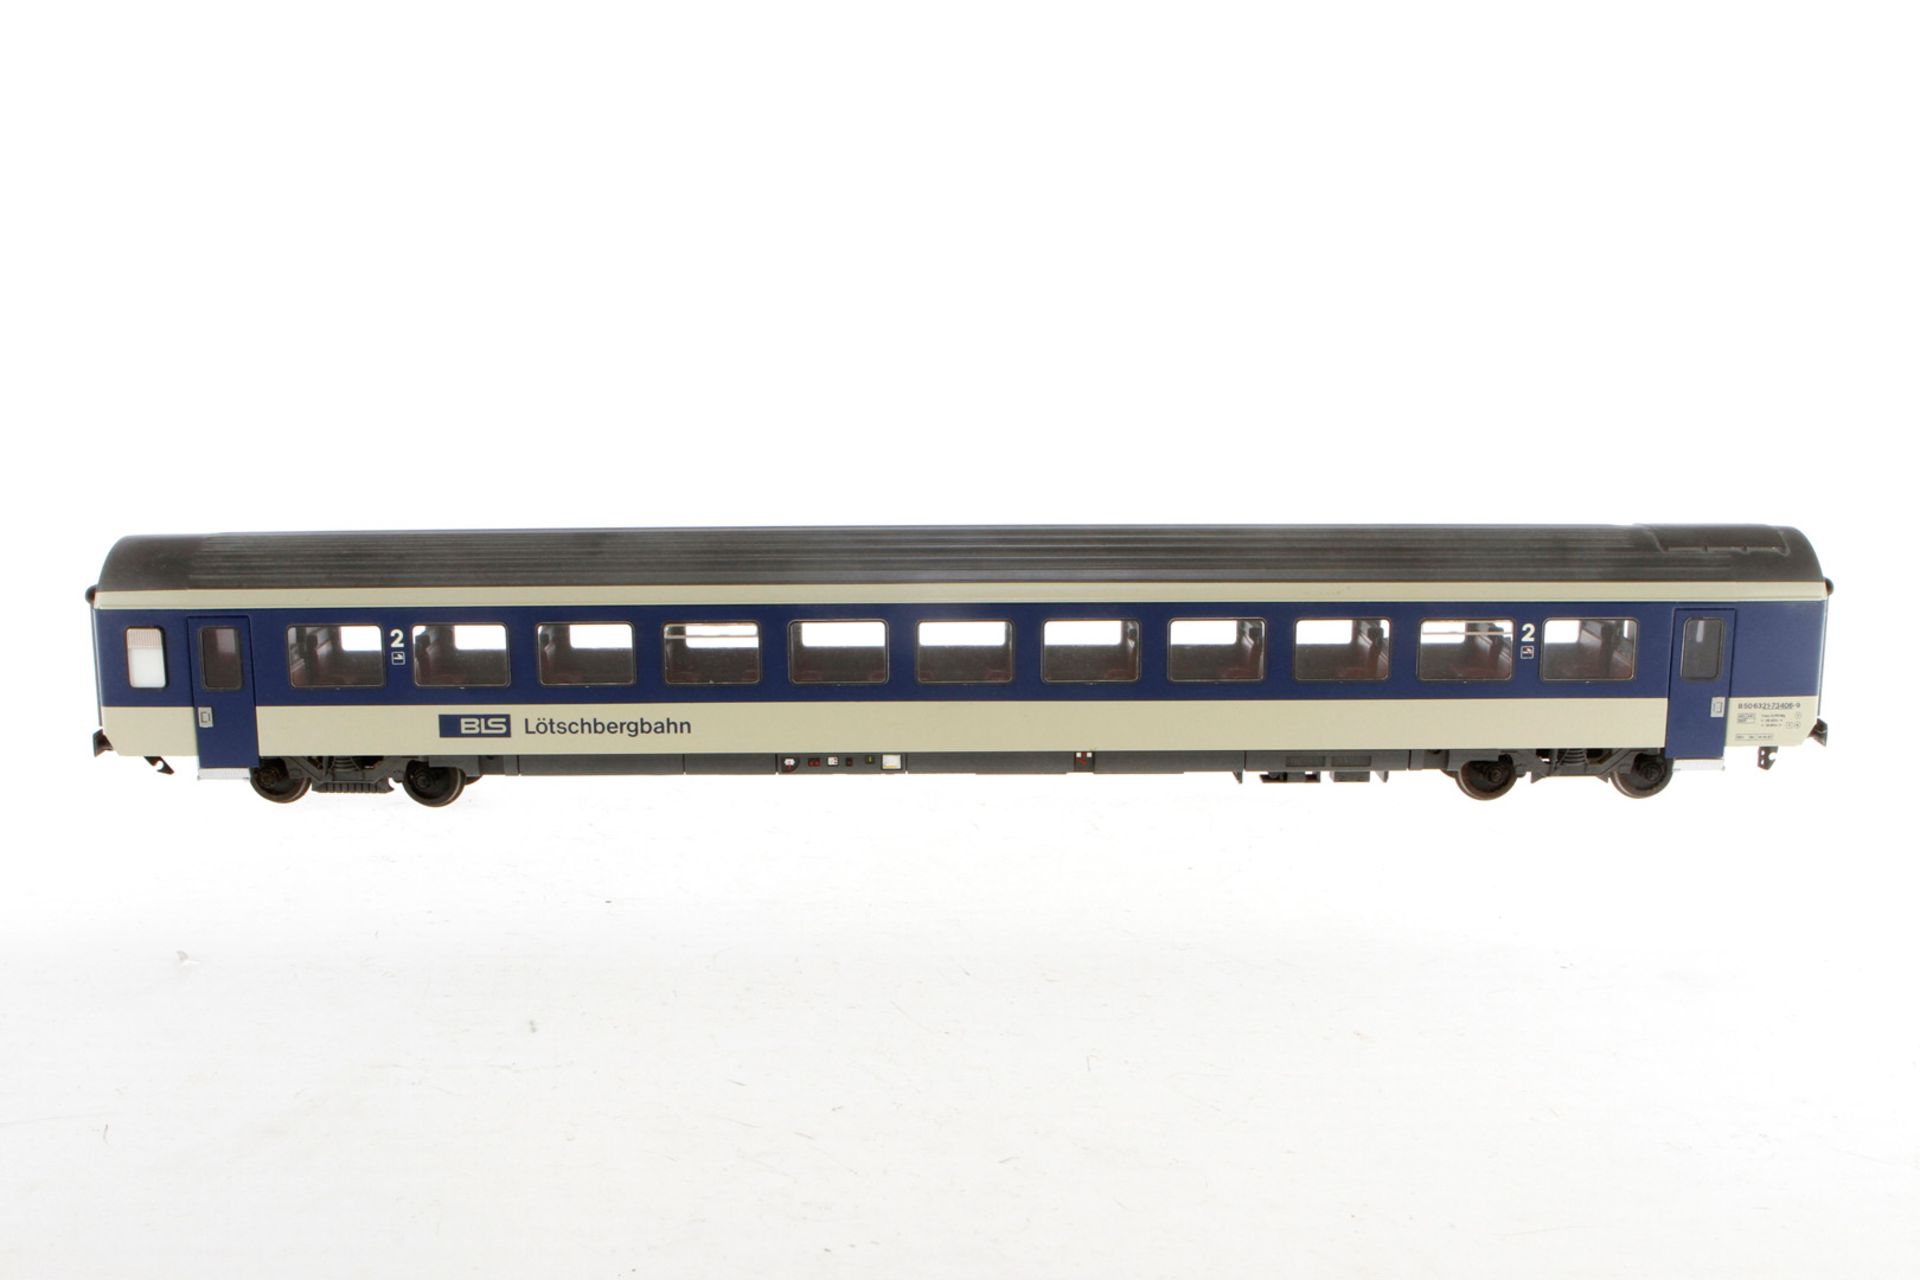 Hermann Personenwagen ”BLS Lötschbergbahn”, S 0, creme/blau, mit Inneneinrichtung und Beleuchtung, 2